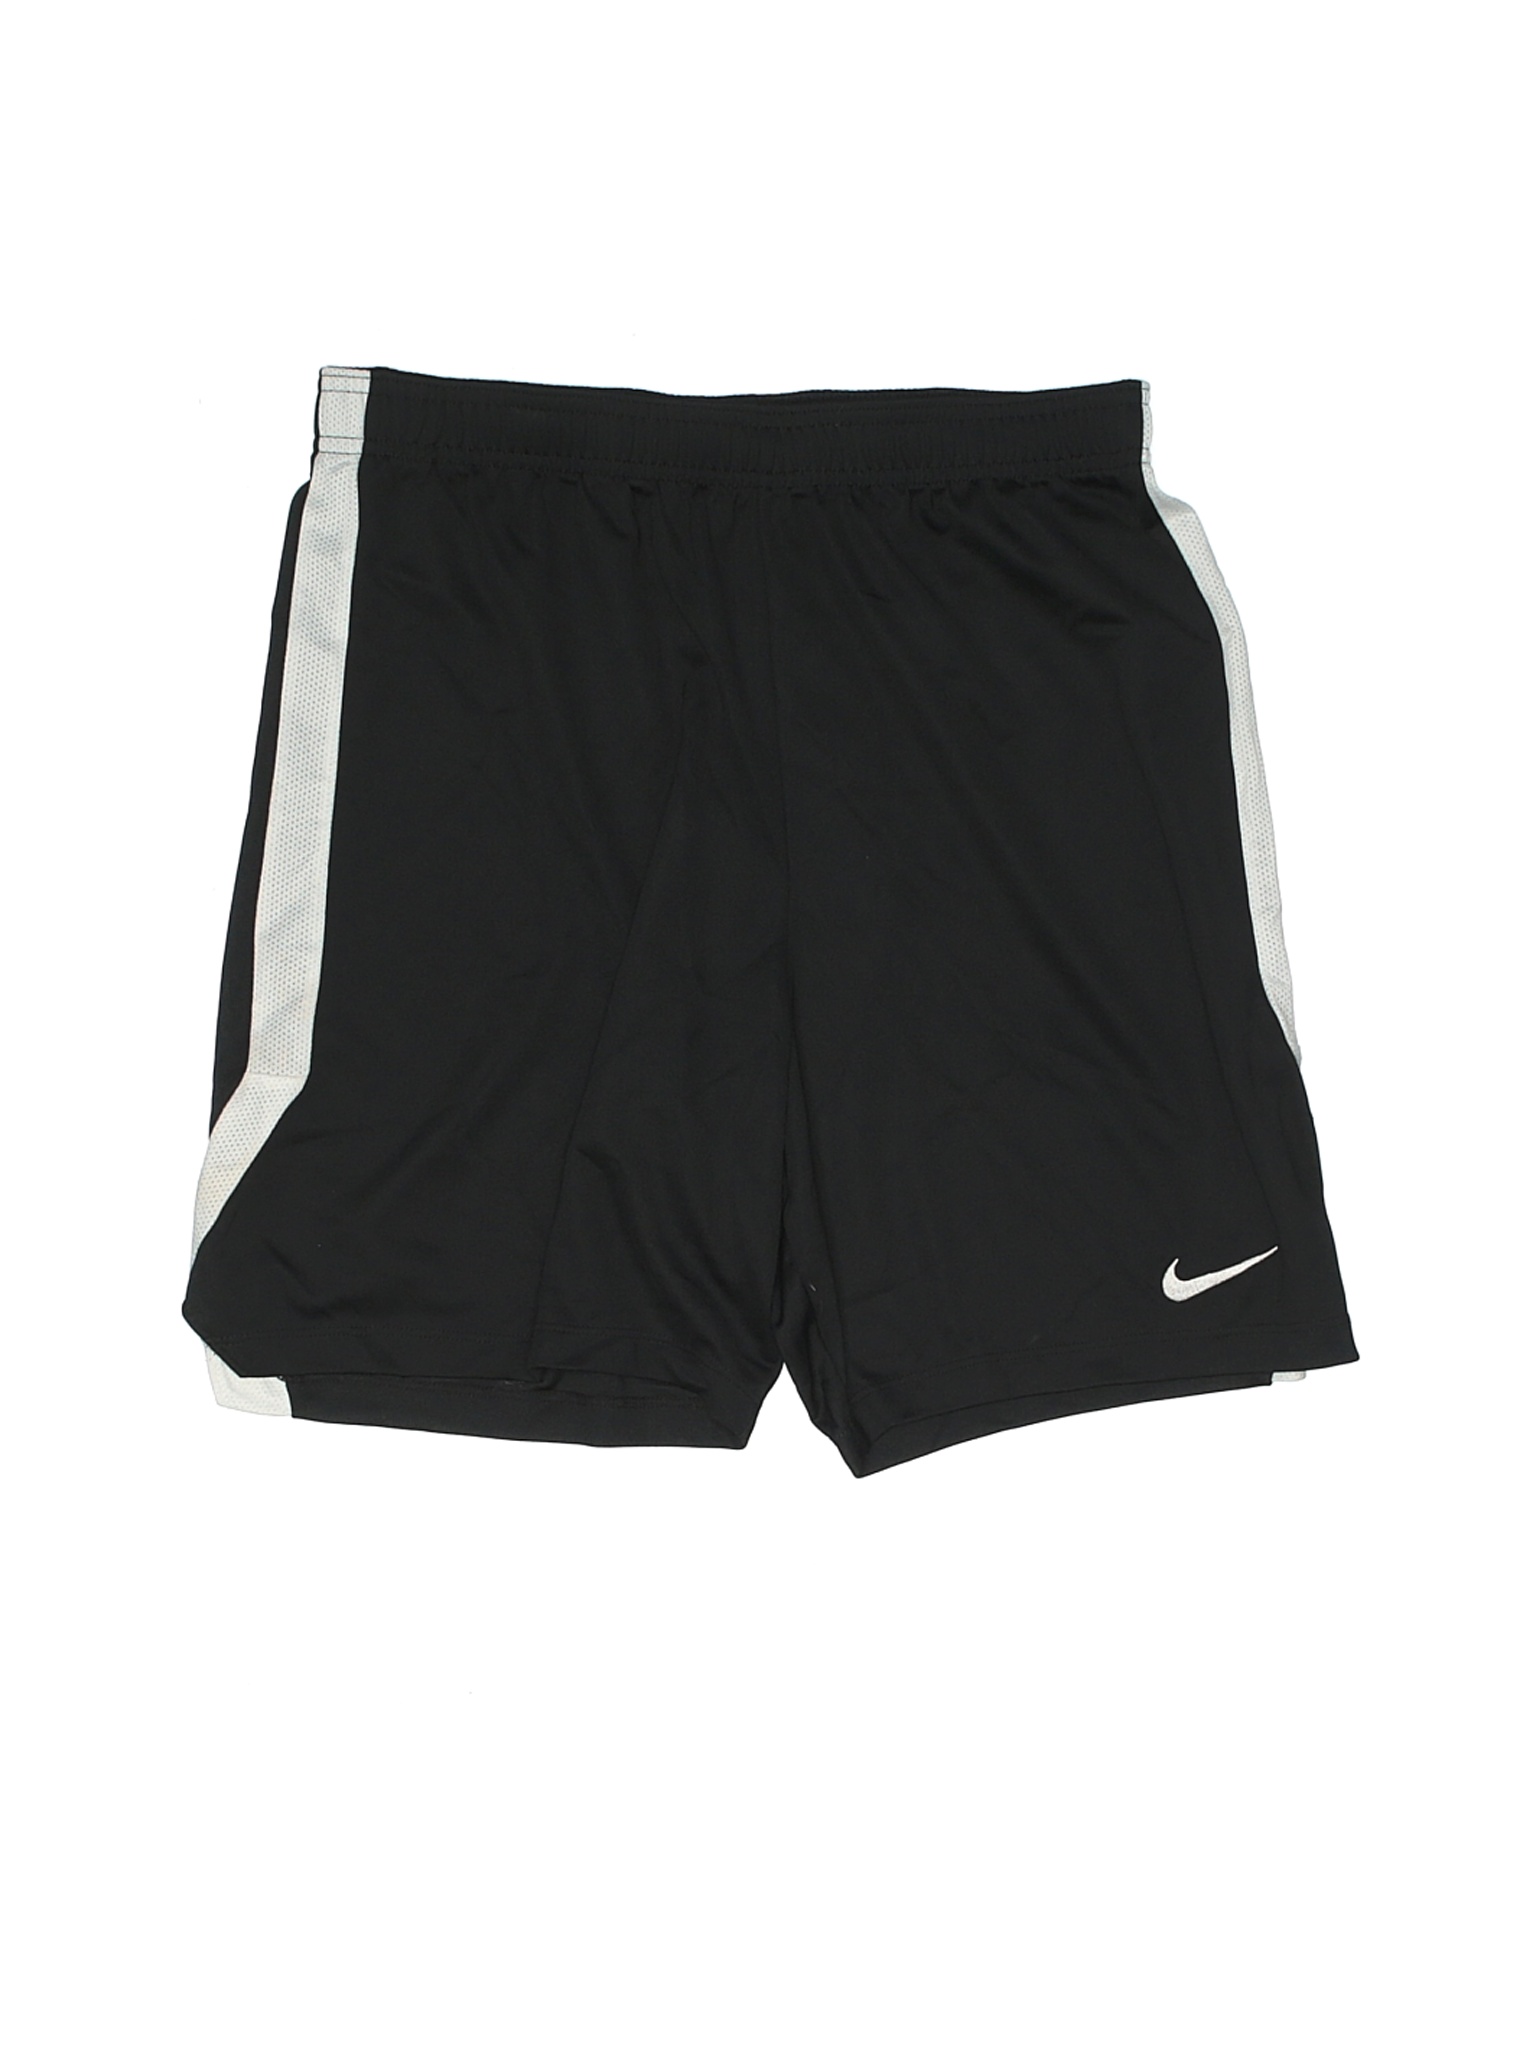 Nike Girls Black Athletic Shorts L Youth | eBay